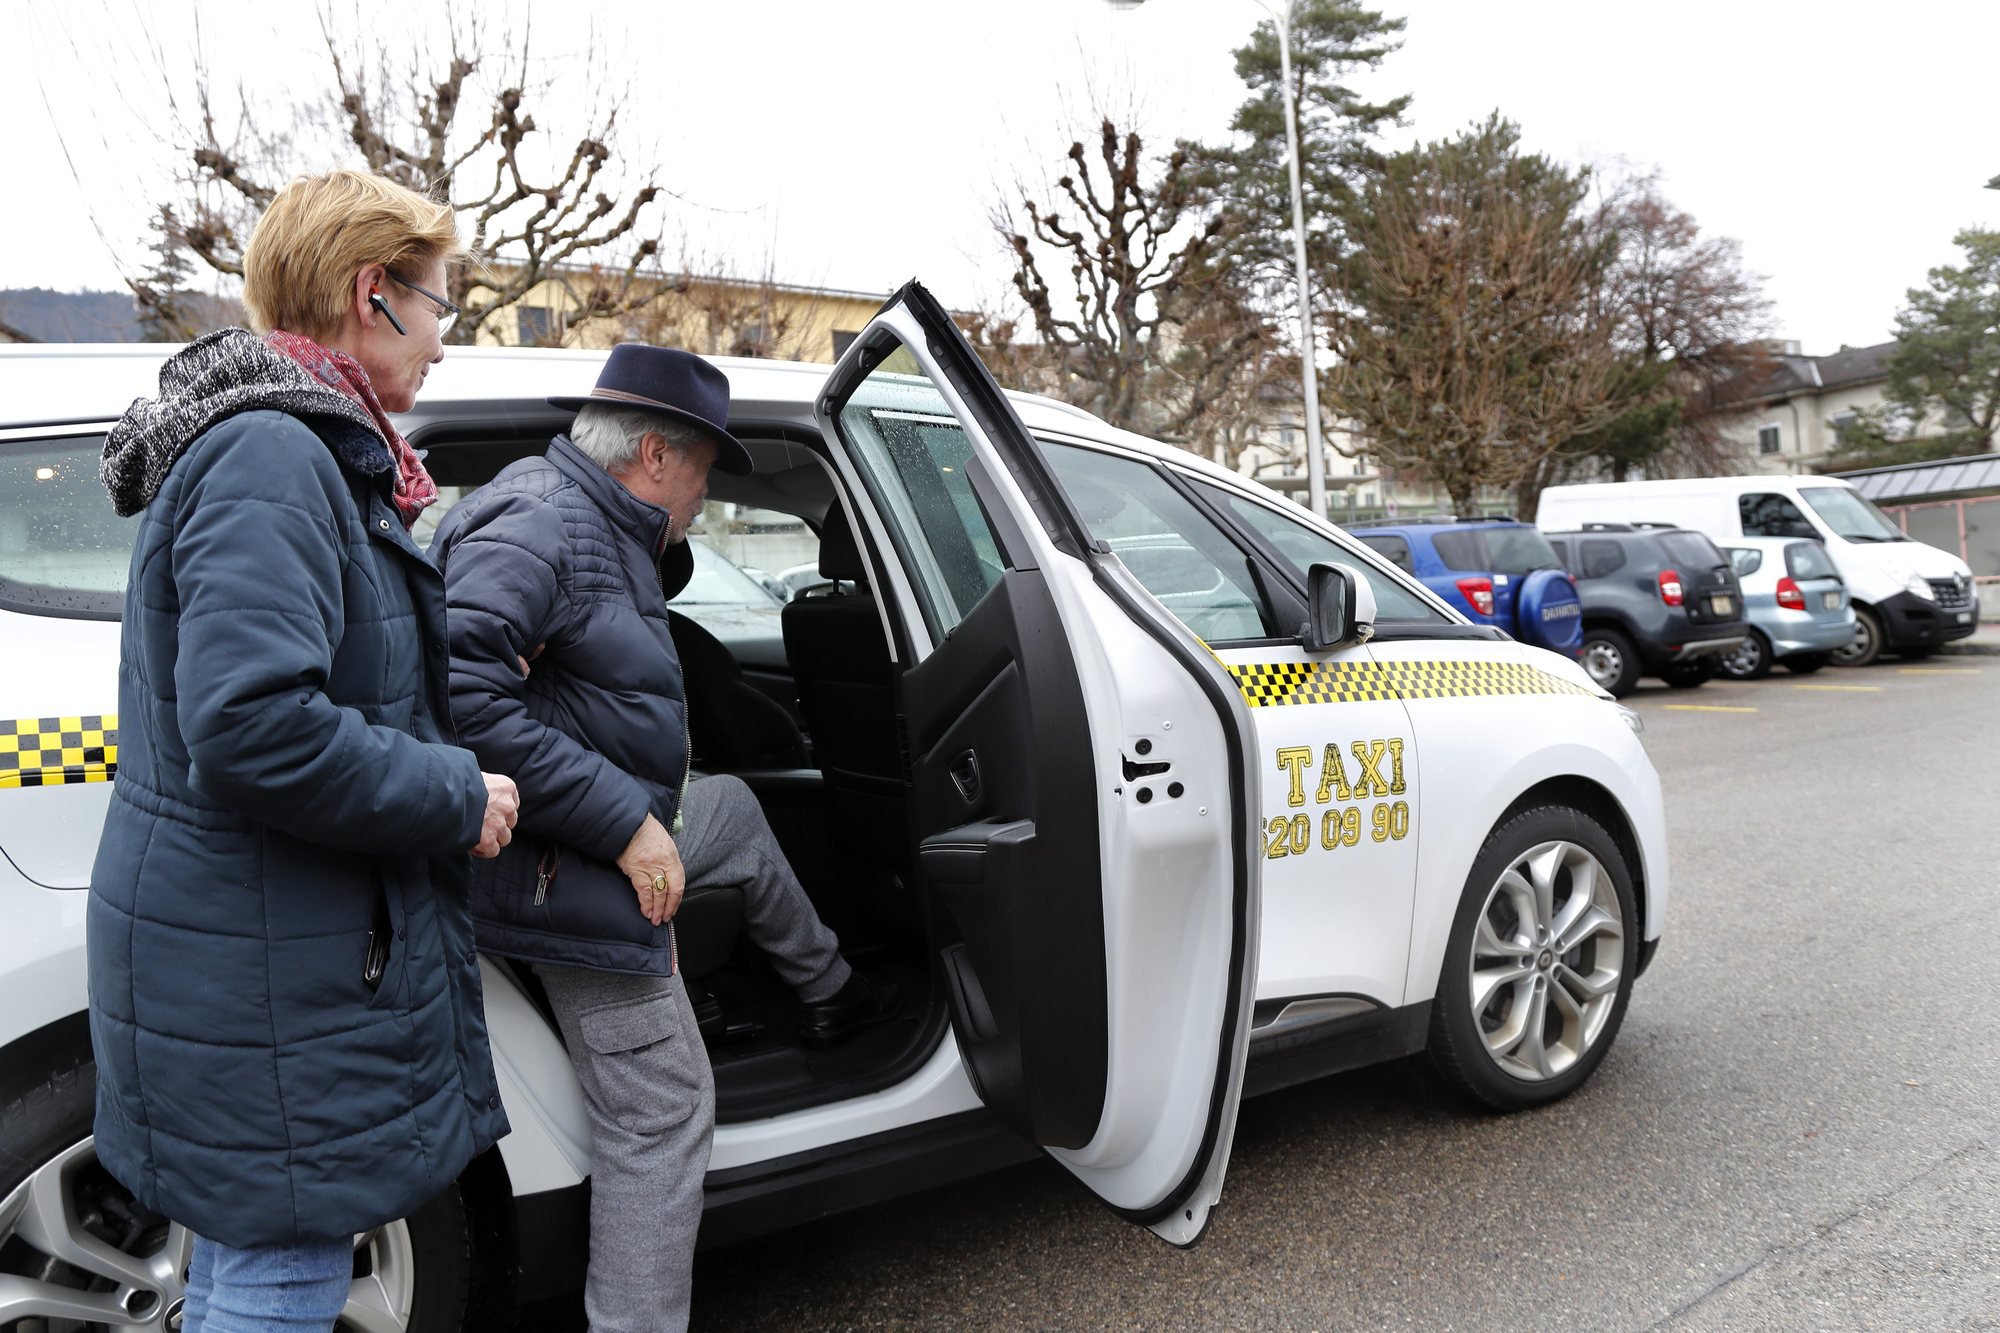 L'Hôpital du Jura a signé une convention avec deux compagnies de taxis afin qu'elles transportent les patients pouvant rester assis. Ce partenariat décharge le service ambulancier.